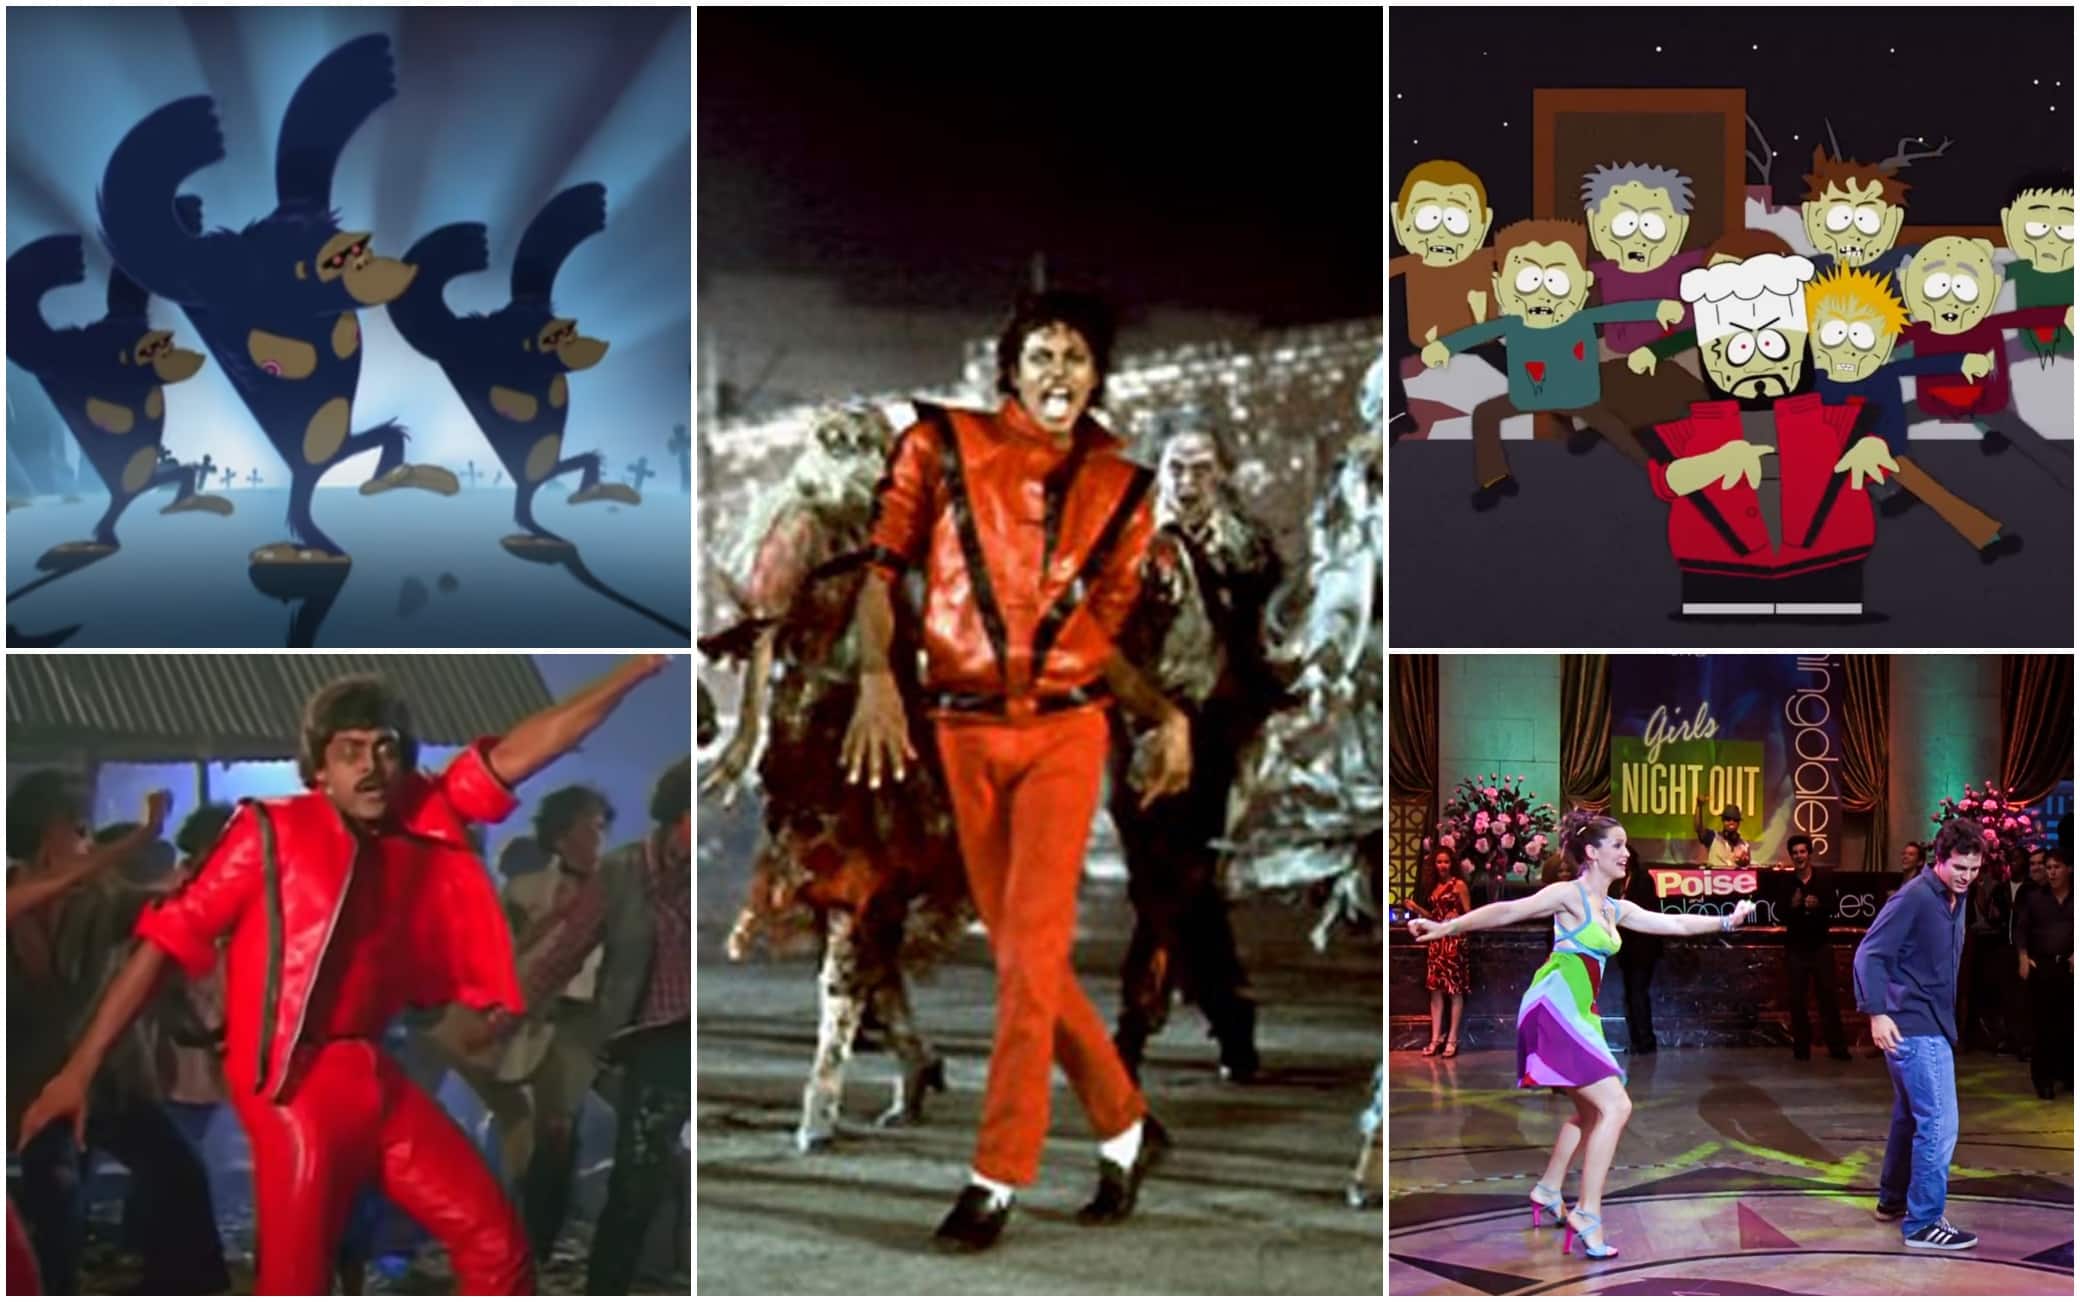 Thriller: meme, citazioni e parodie dell'iconico videoclip di Michael  Jackson. FOTO